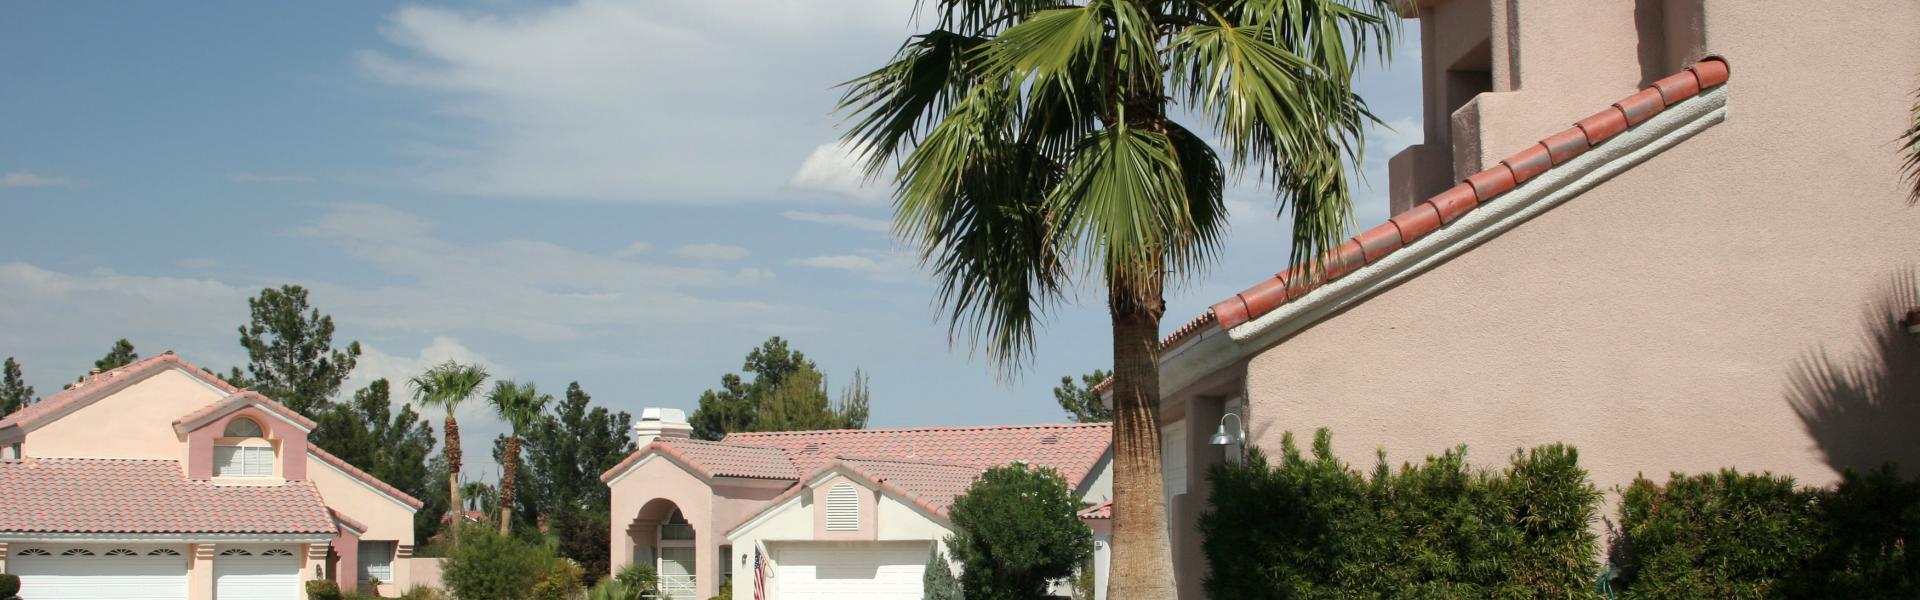 Locations de vacances et chambres d'hôtes dans le Nevada - Casamundo